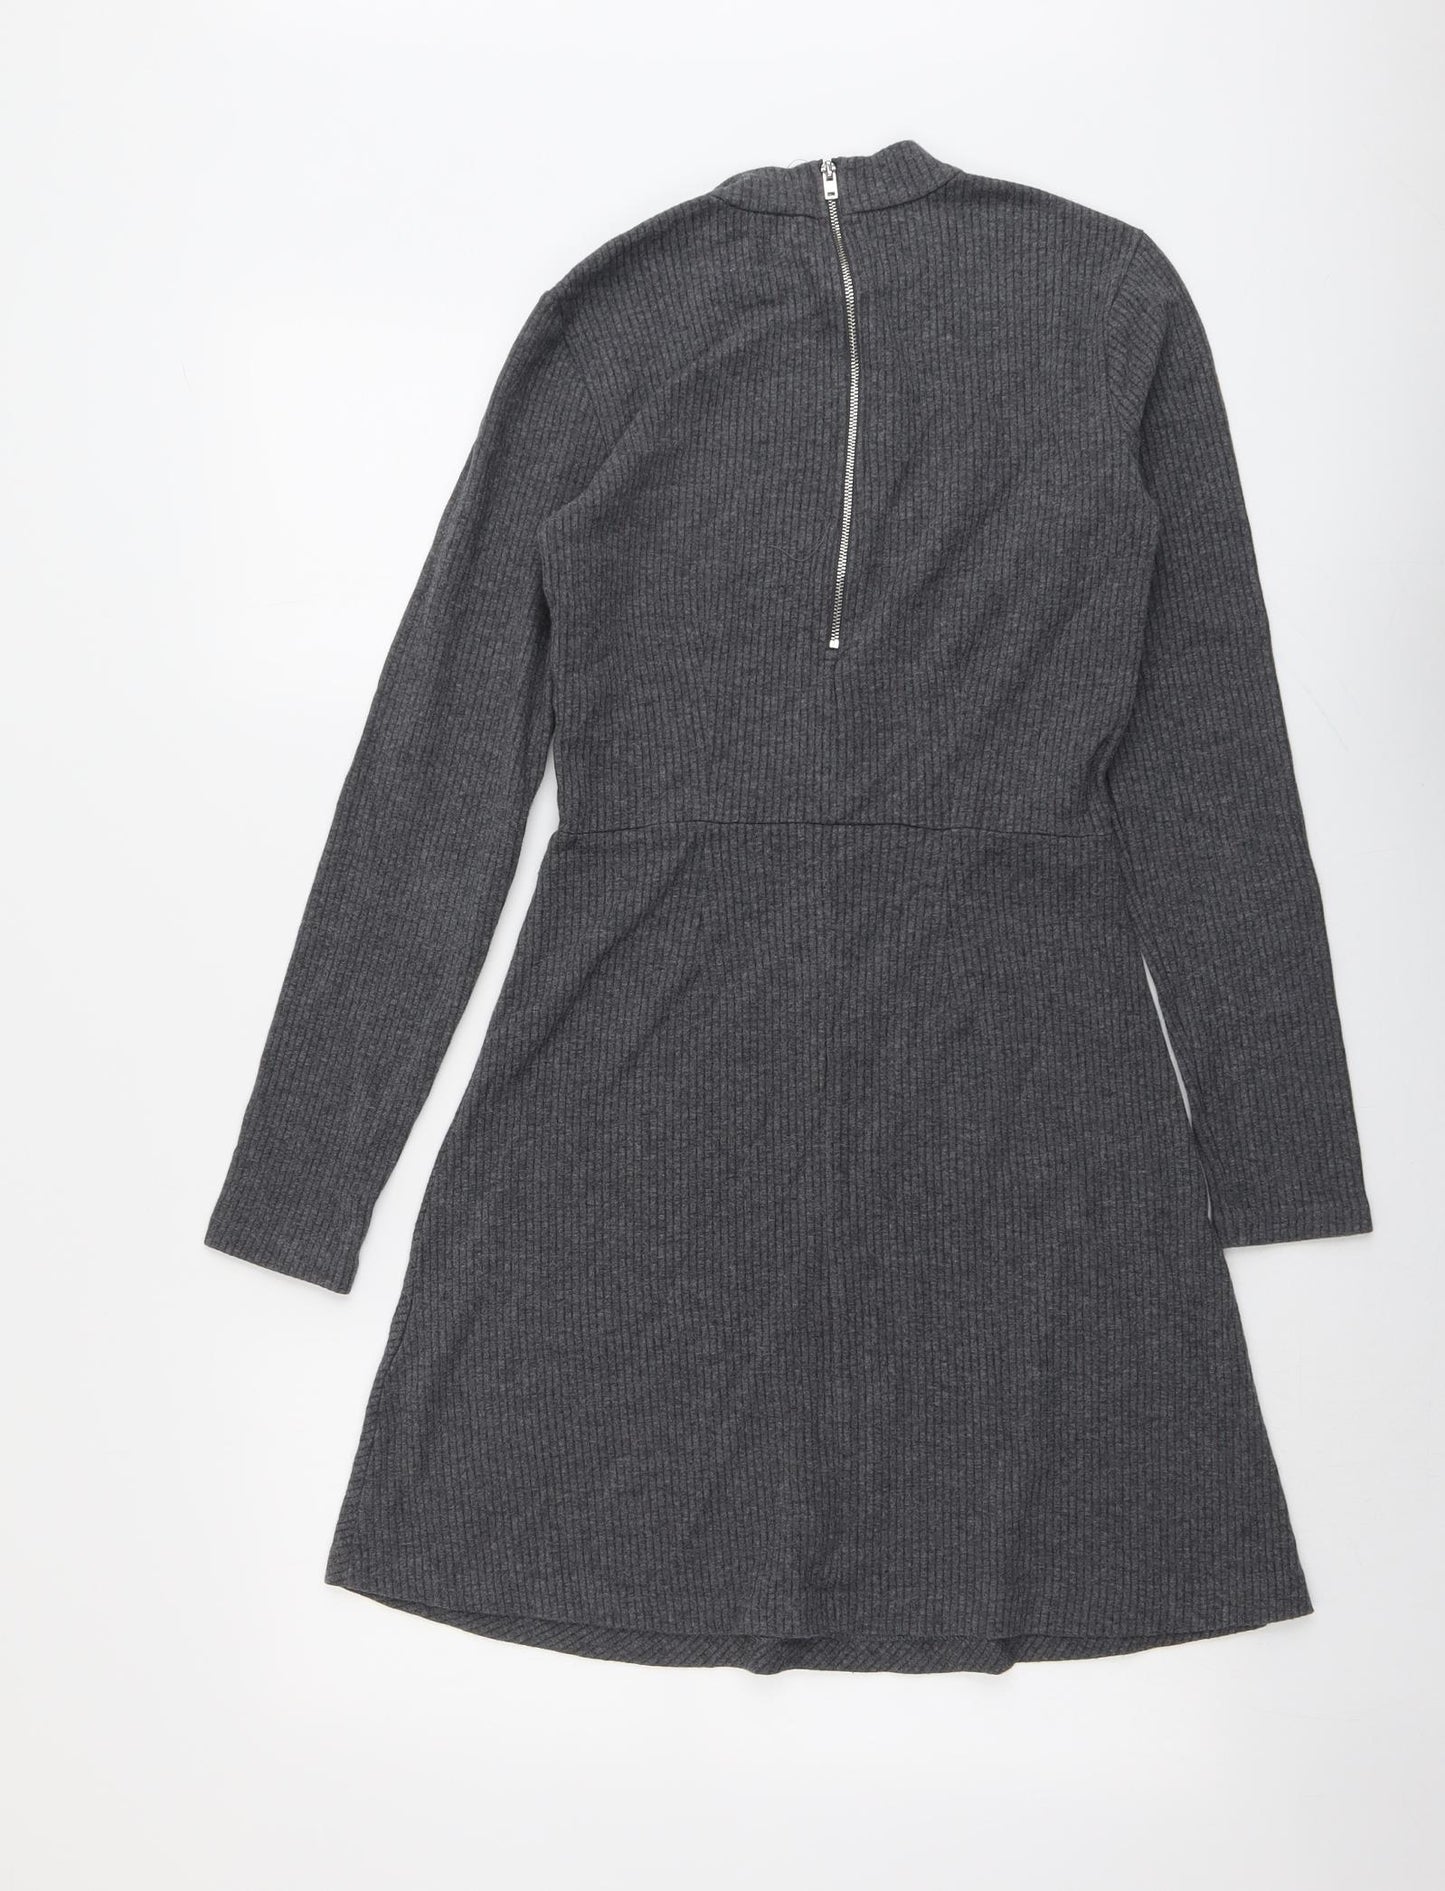 Witchery Womens Grey Cotton Jumper Dress Size 8 Round Neck Zip